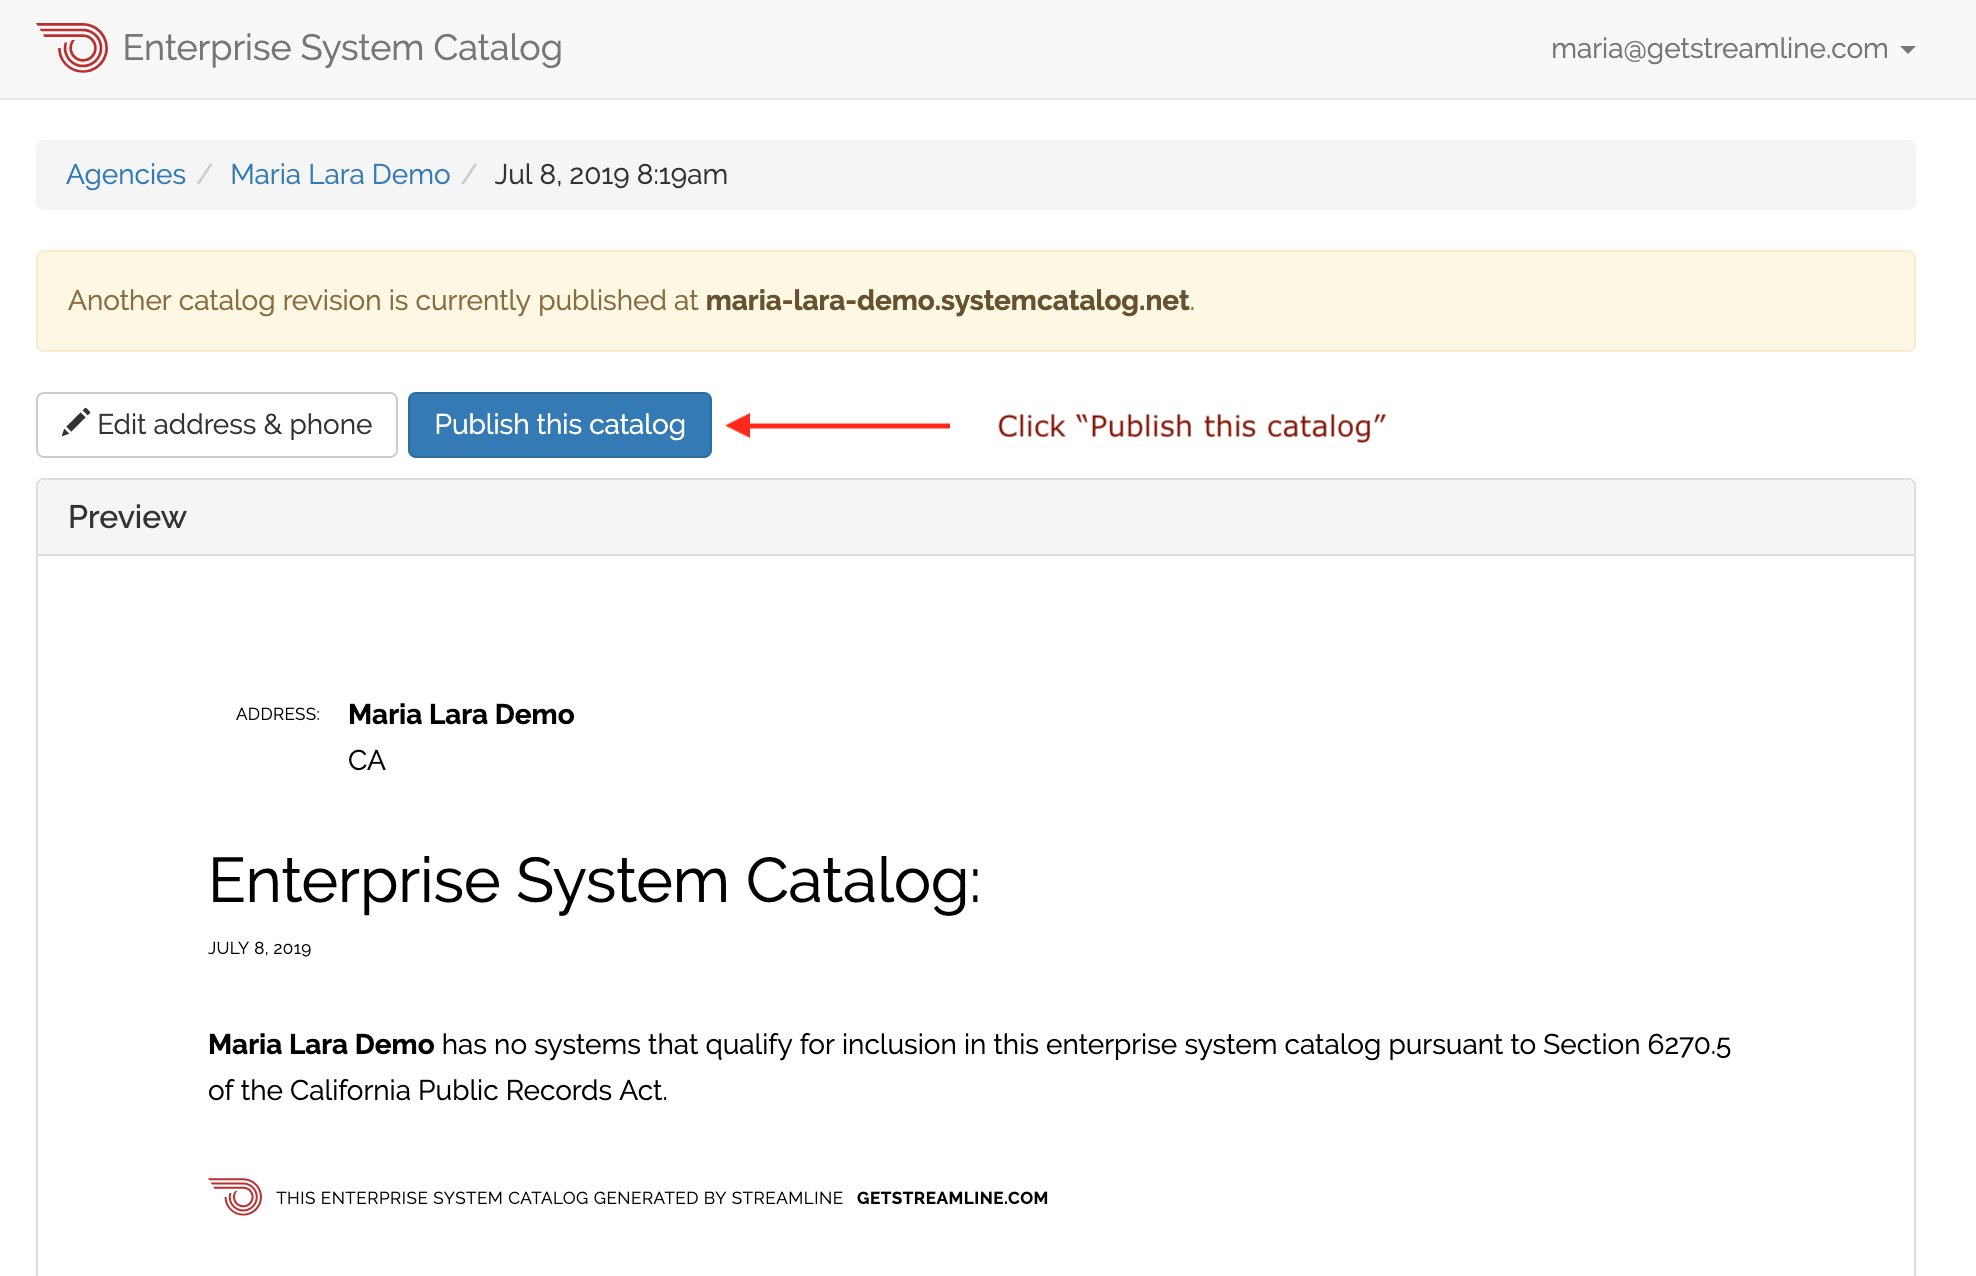 Enterprise System Catalog: Publishing